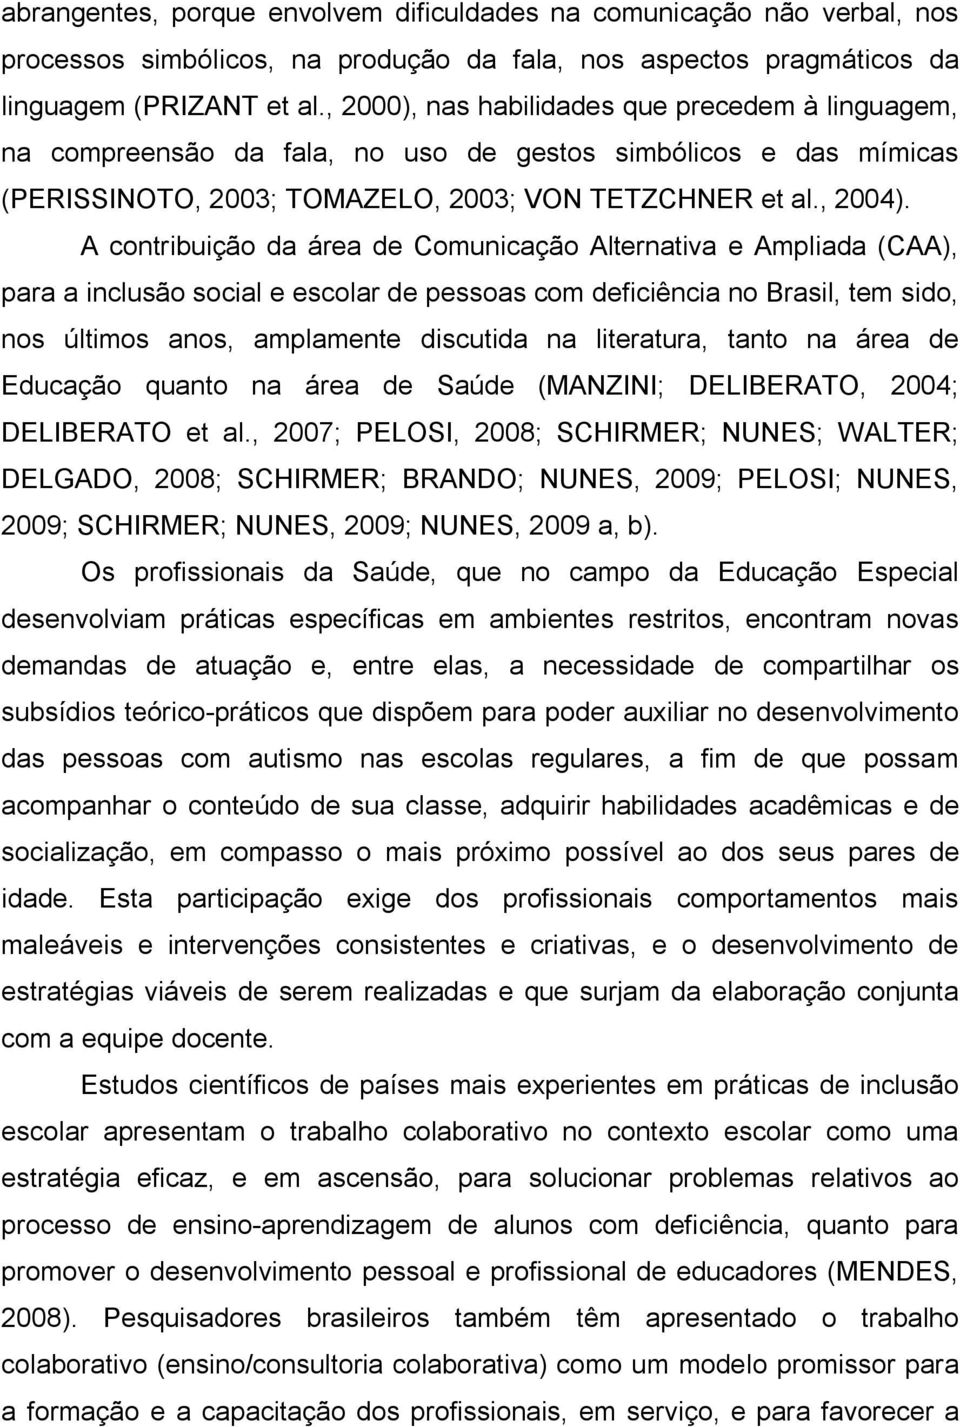 A contribuição da área de Comunicação Alternativa e Ampliada (CAA), para a inclusão social e escolar de pessoas com deficiência no Brasil, tem sido, nos últimos anos, amplamente discutida na